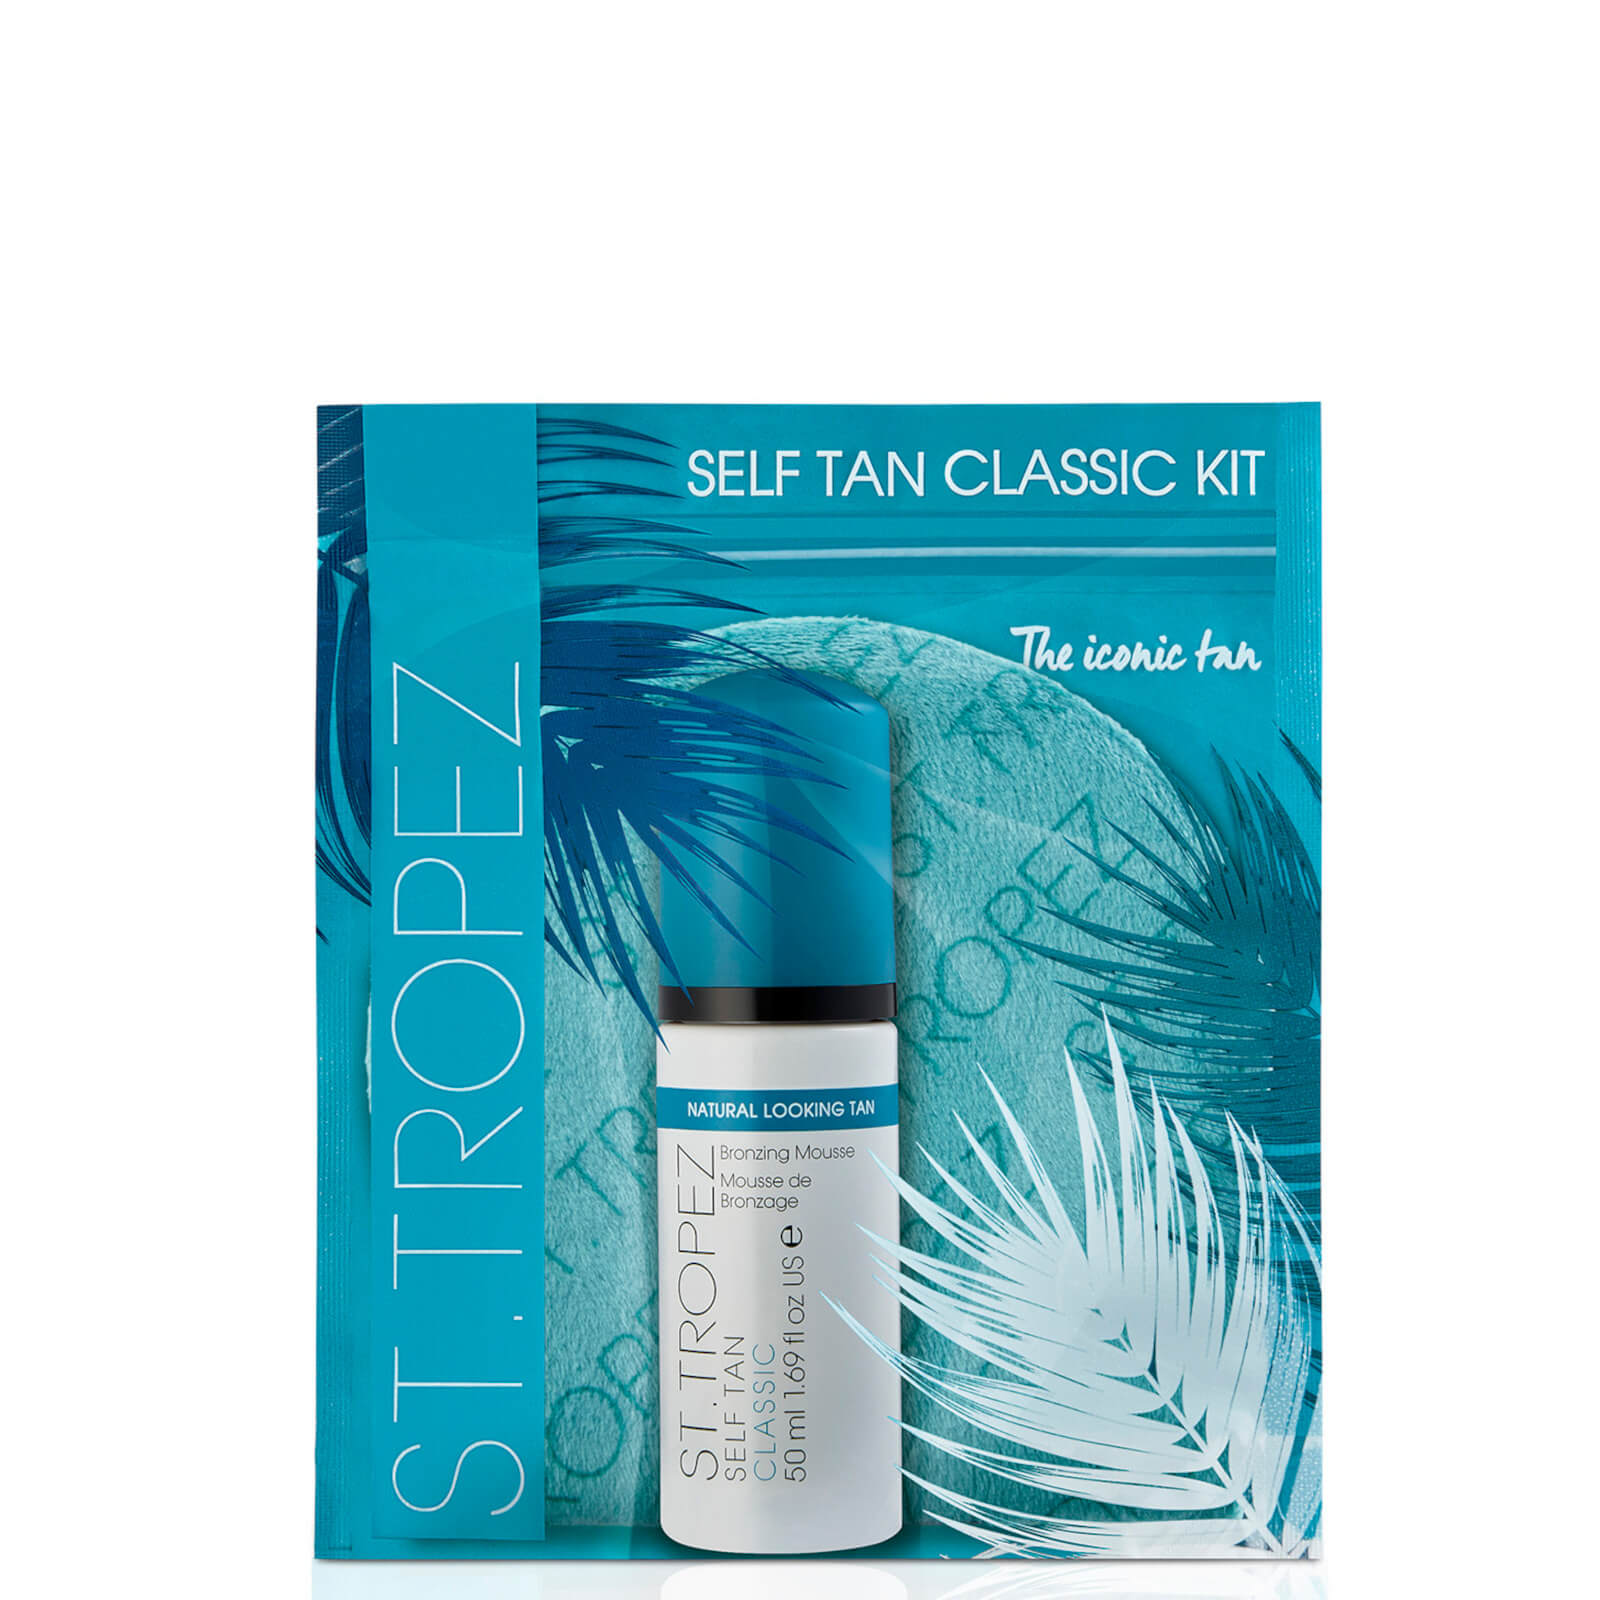 St. Tropez Self Tan Classic Kit (worth $24.50) In Blue